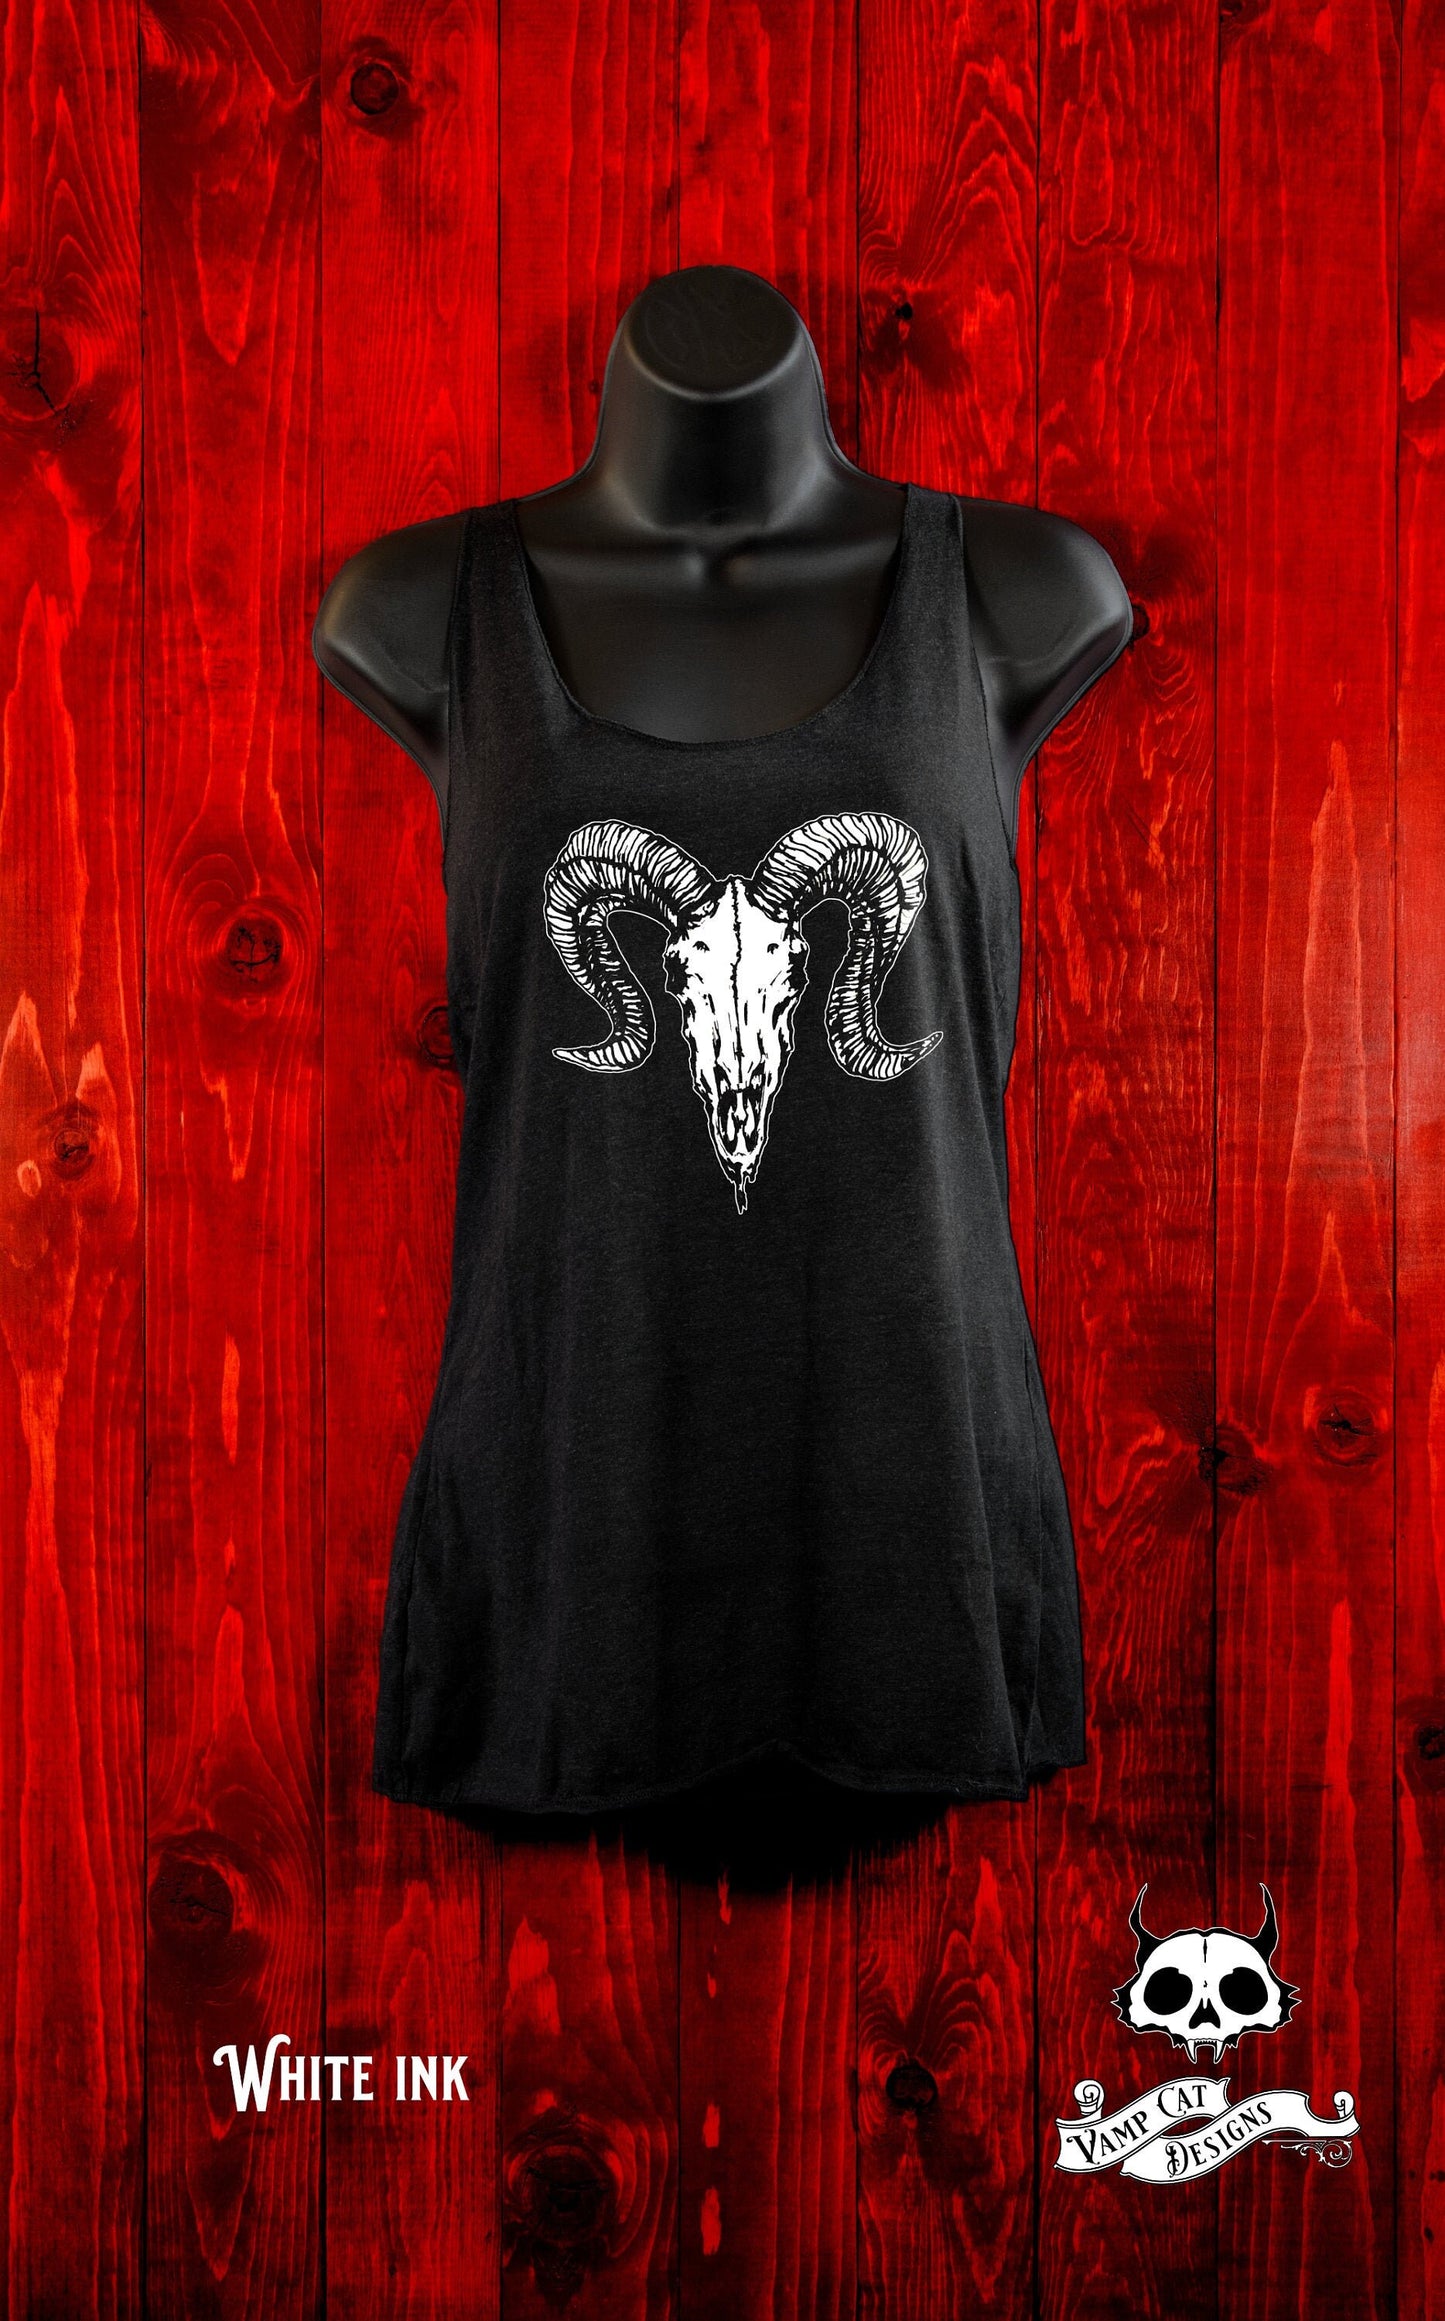 Dark Ram Skull-Tank Top-Gifts For Her-Dark Apparel-Illustration- Art T-shirt-Animal Skull-Ram Skull-Silkscreen art-Occult Gifts-Dark Fashion